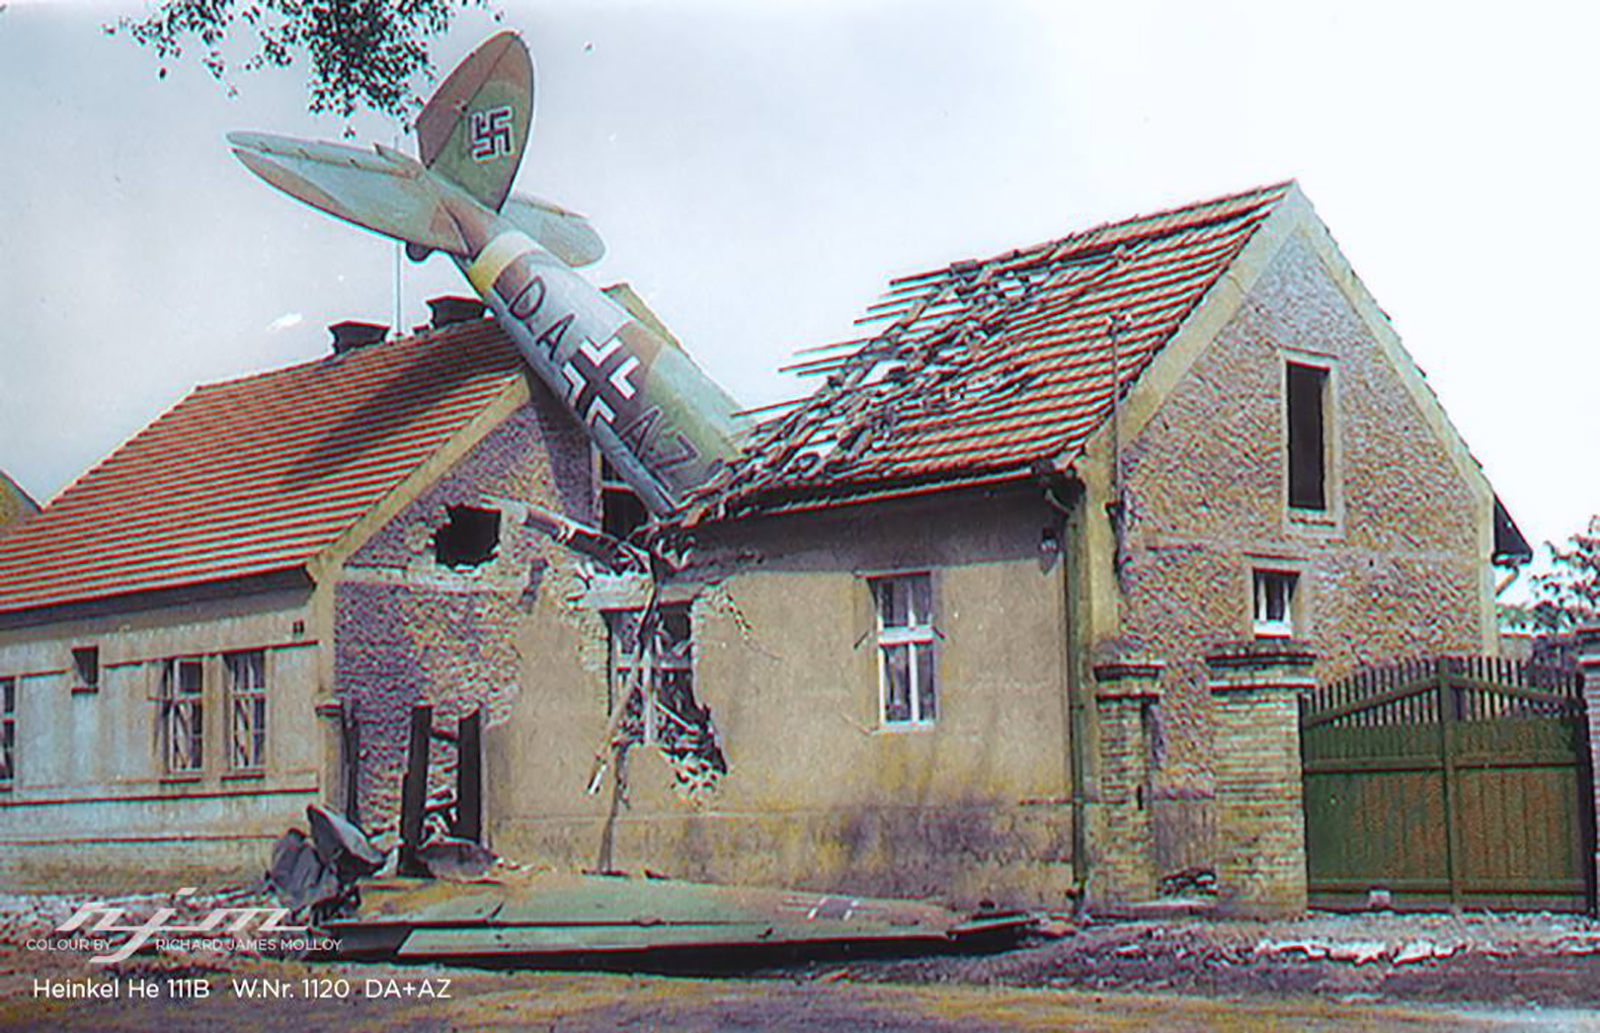 Heinkel He 111B2 FFSC12 Stkz DA+AZ WNr 1120 crashsite Jenec Prague Ruzyne Czech 15th Jul 1941 01